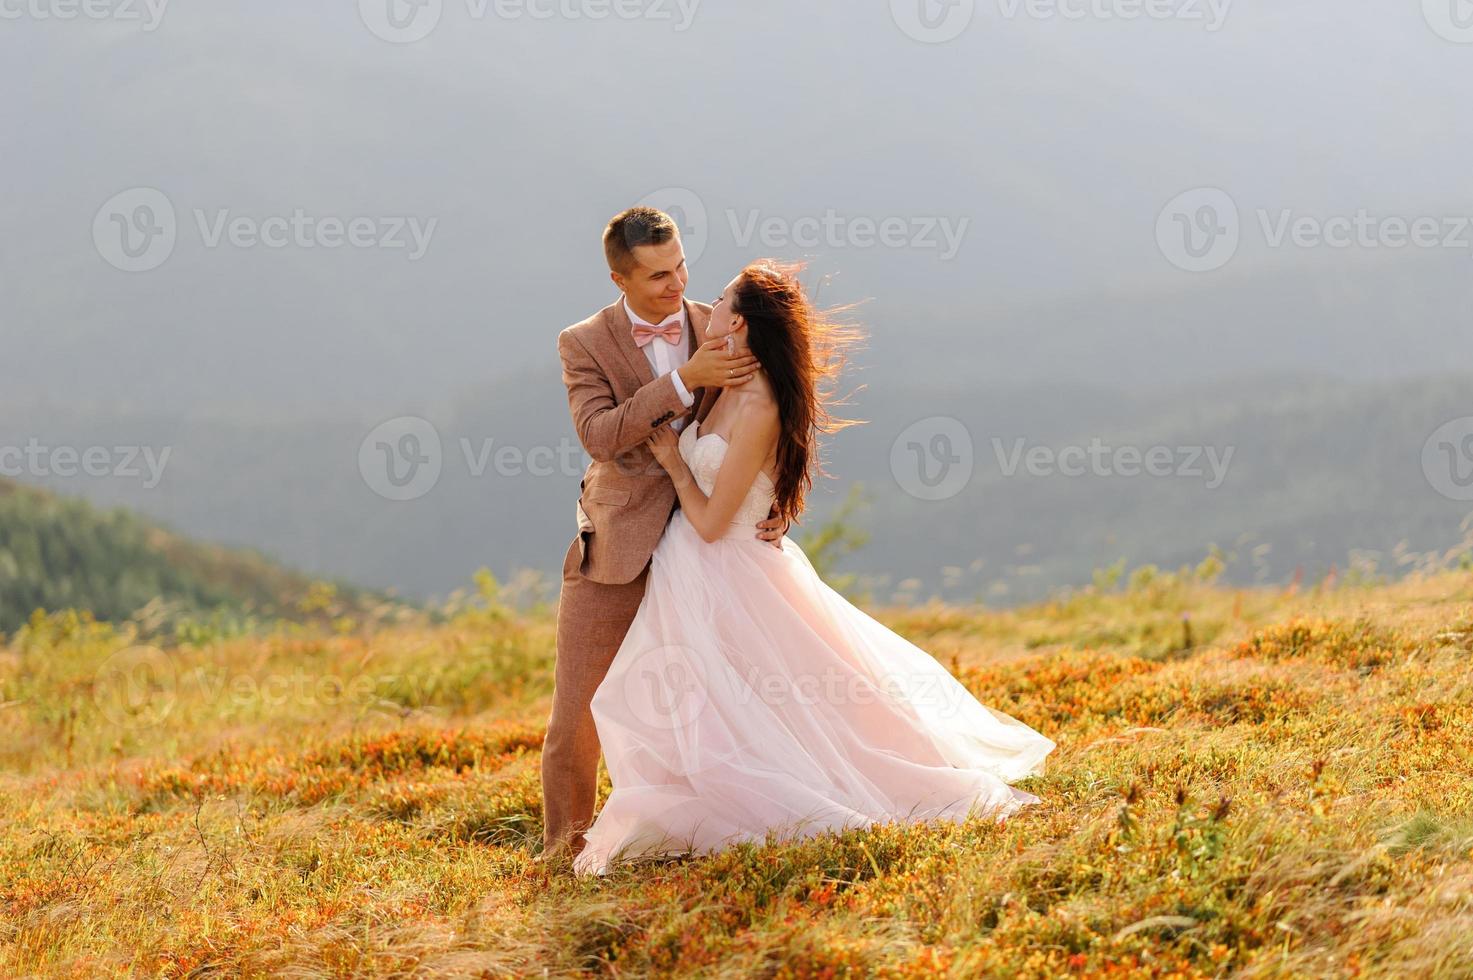 bruid en bruidegom. fotoshoot in de bergen. foto